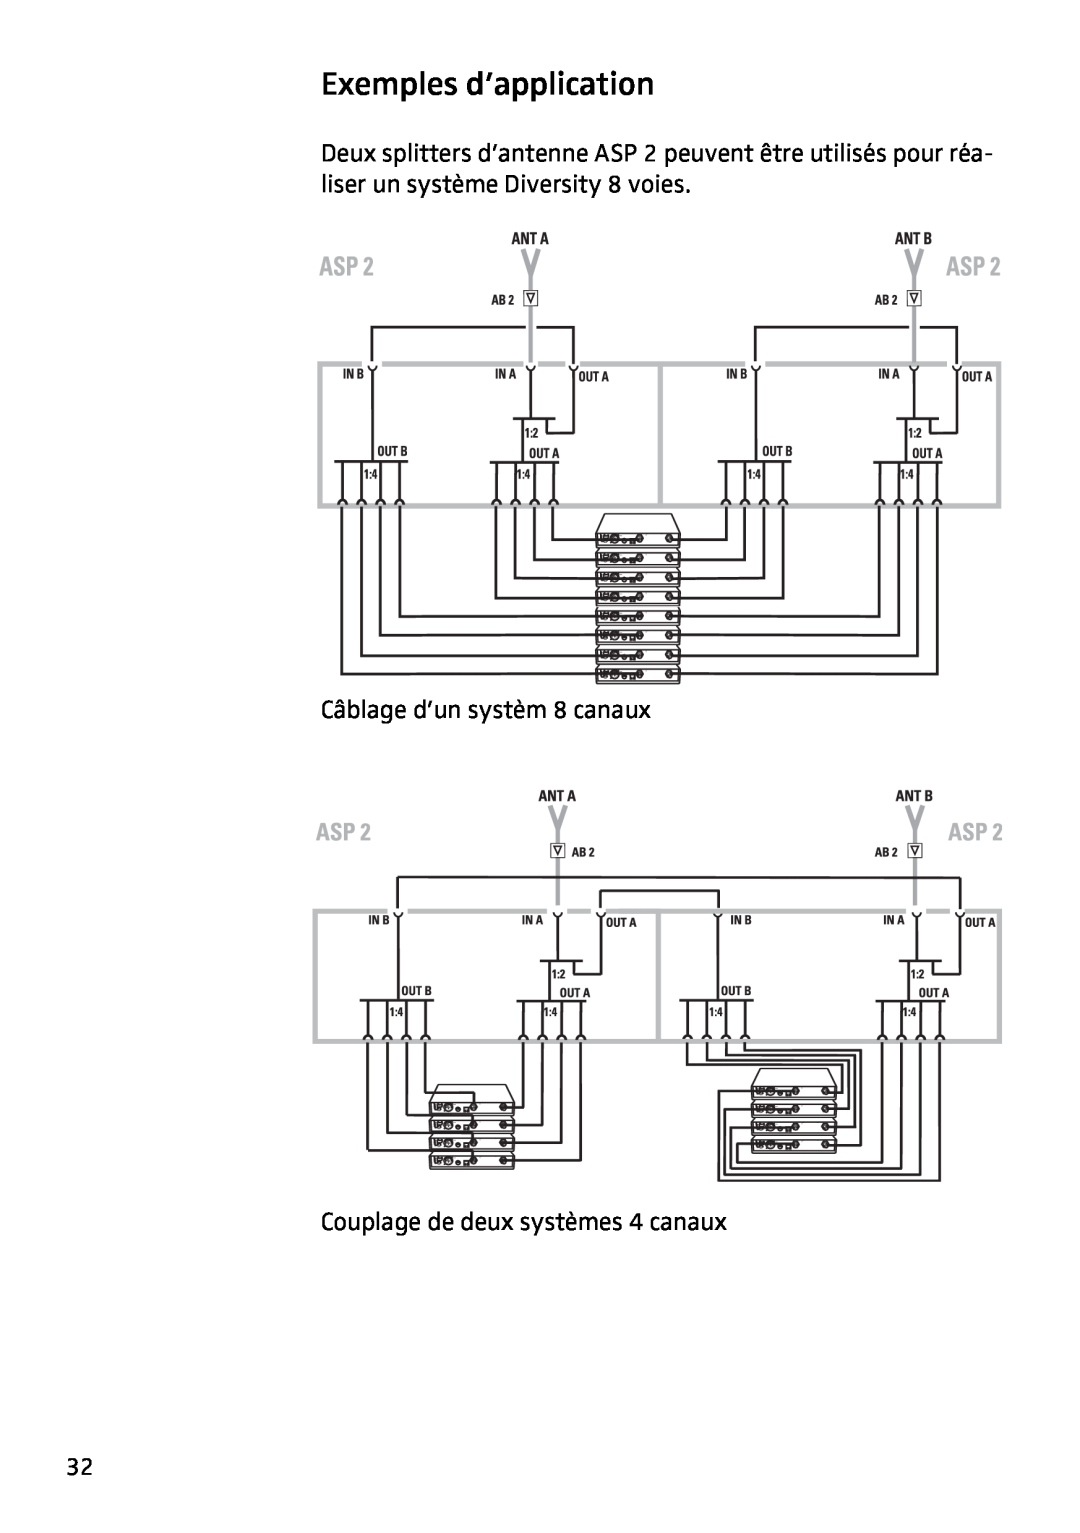 Sennheiser ASP 2 manual Exemples d’application, Câblage d’un systèm 8 canaux, Couplage de deux systèmes 4 canaux 